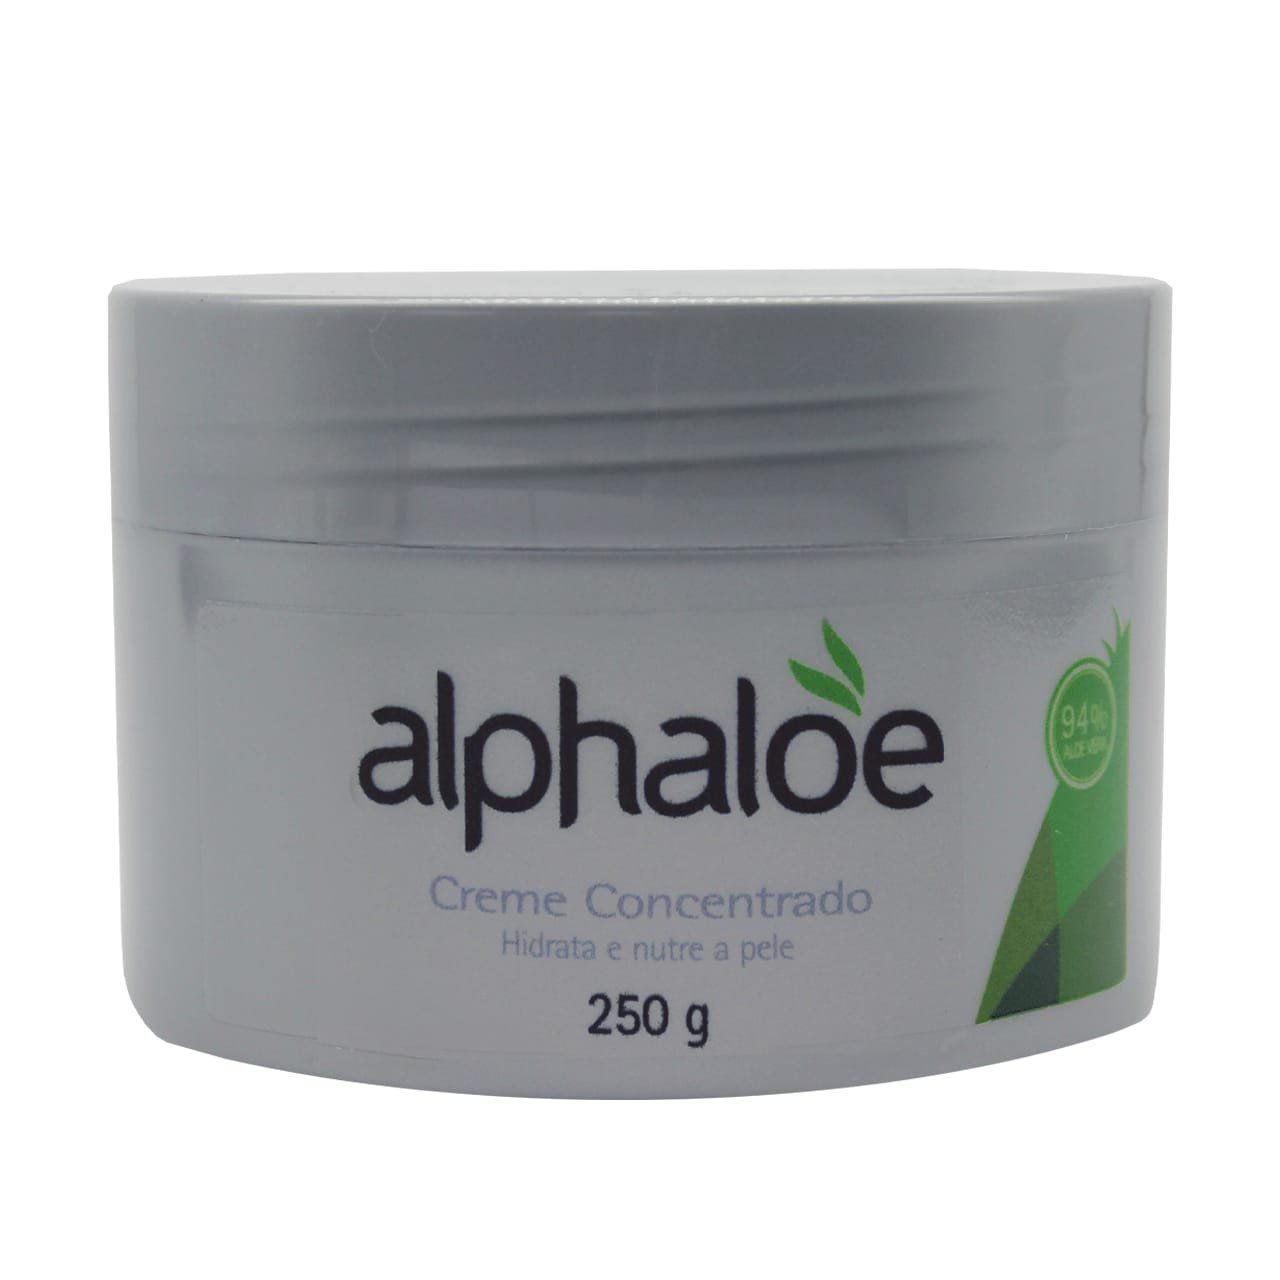 Creme Concentrado De Aloe Vera Alphaloe (93% de Babosa) 250g Concentrado 7,6:1